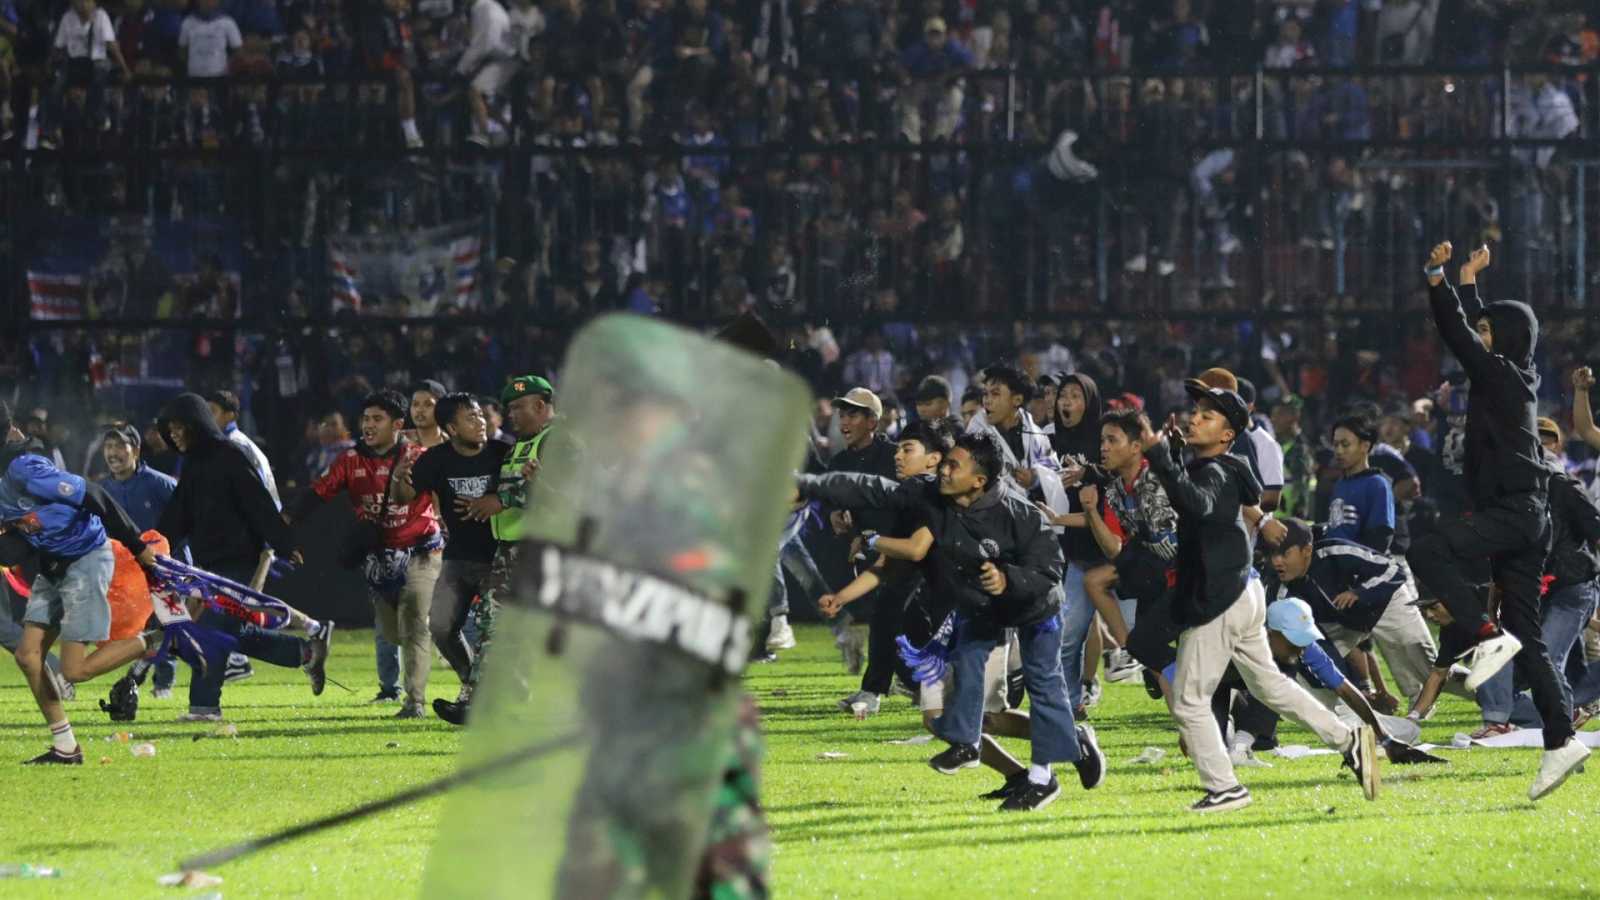 visión tuberculosis de ahora en adelante Al menos 125 muertos en los violentos enfrentamientos en un partido de  fútbol en Indonesia